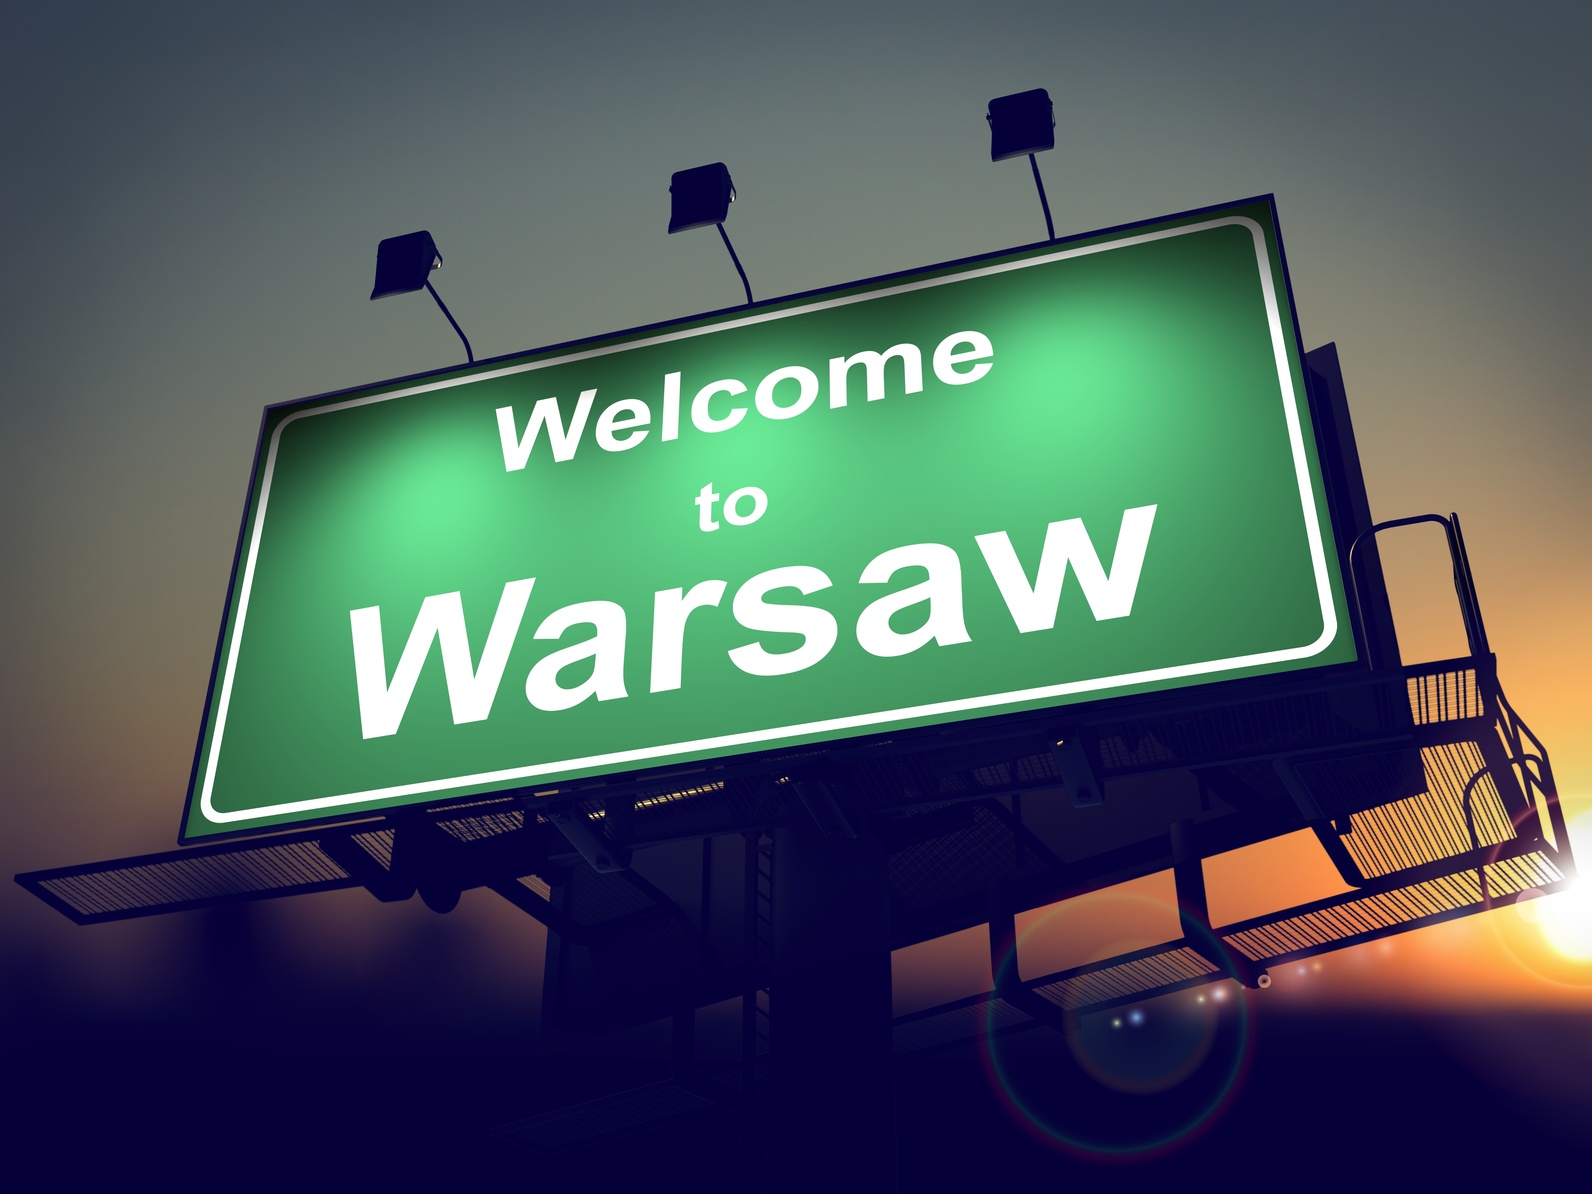 Zielona, aktywna i rozrywkowa – zobacz, jaka jeszcze jest Warszawa